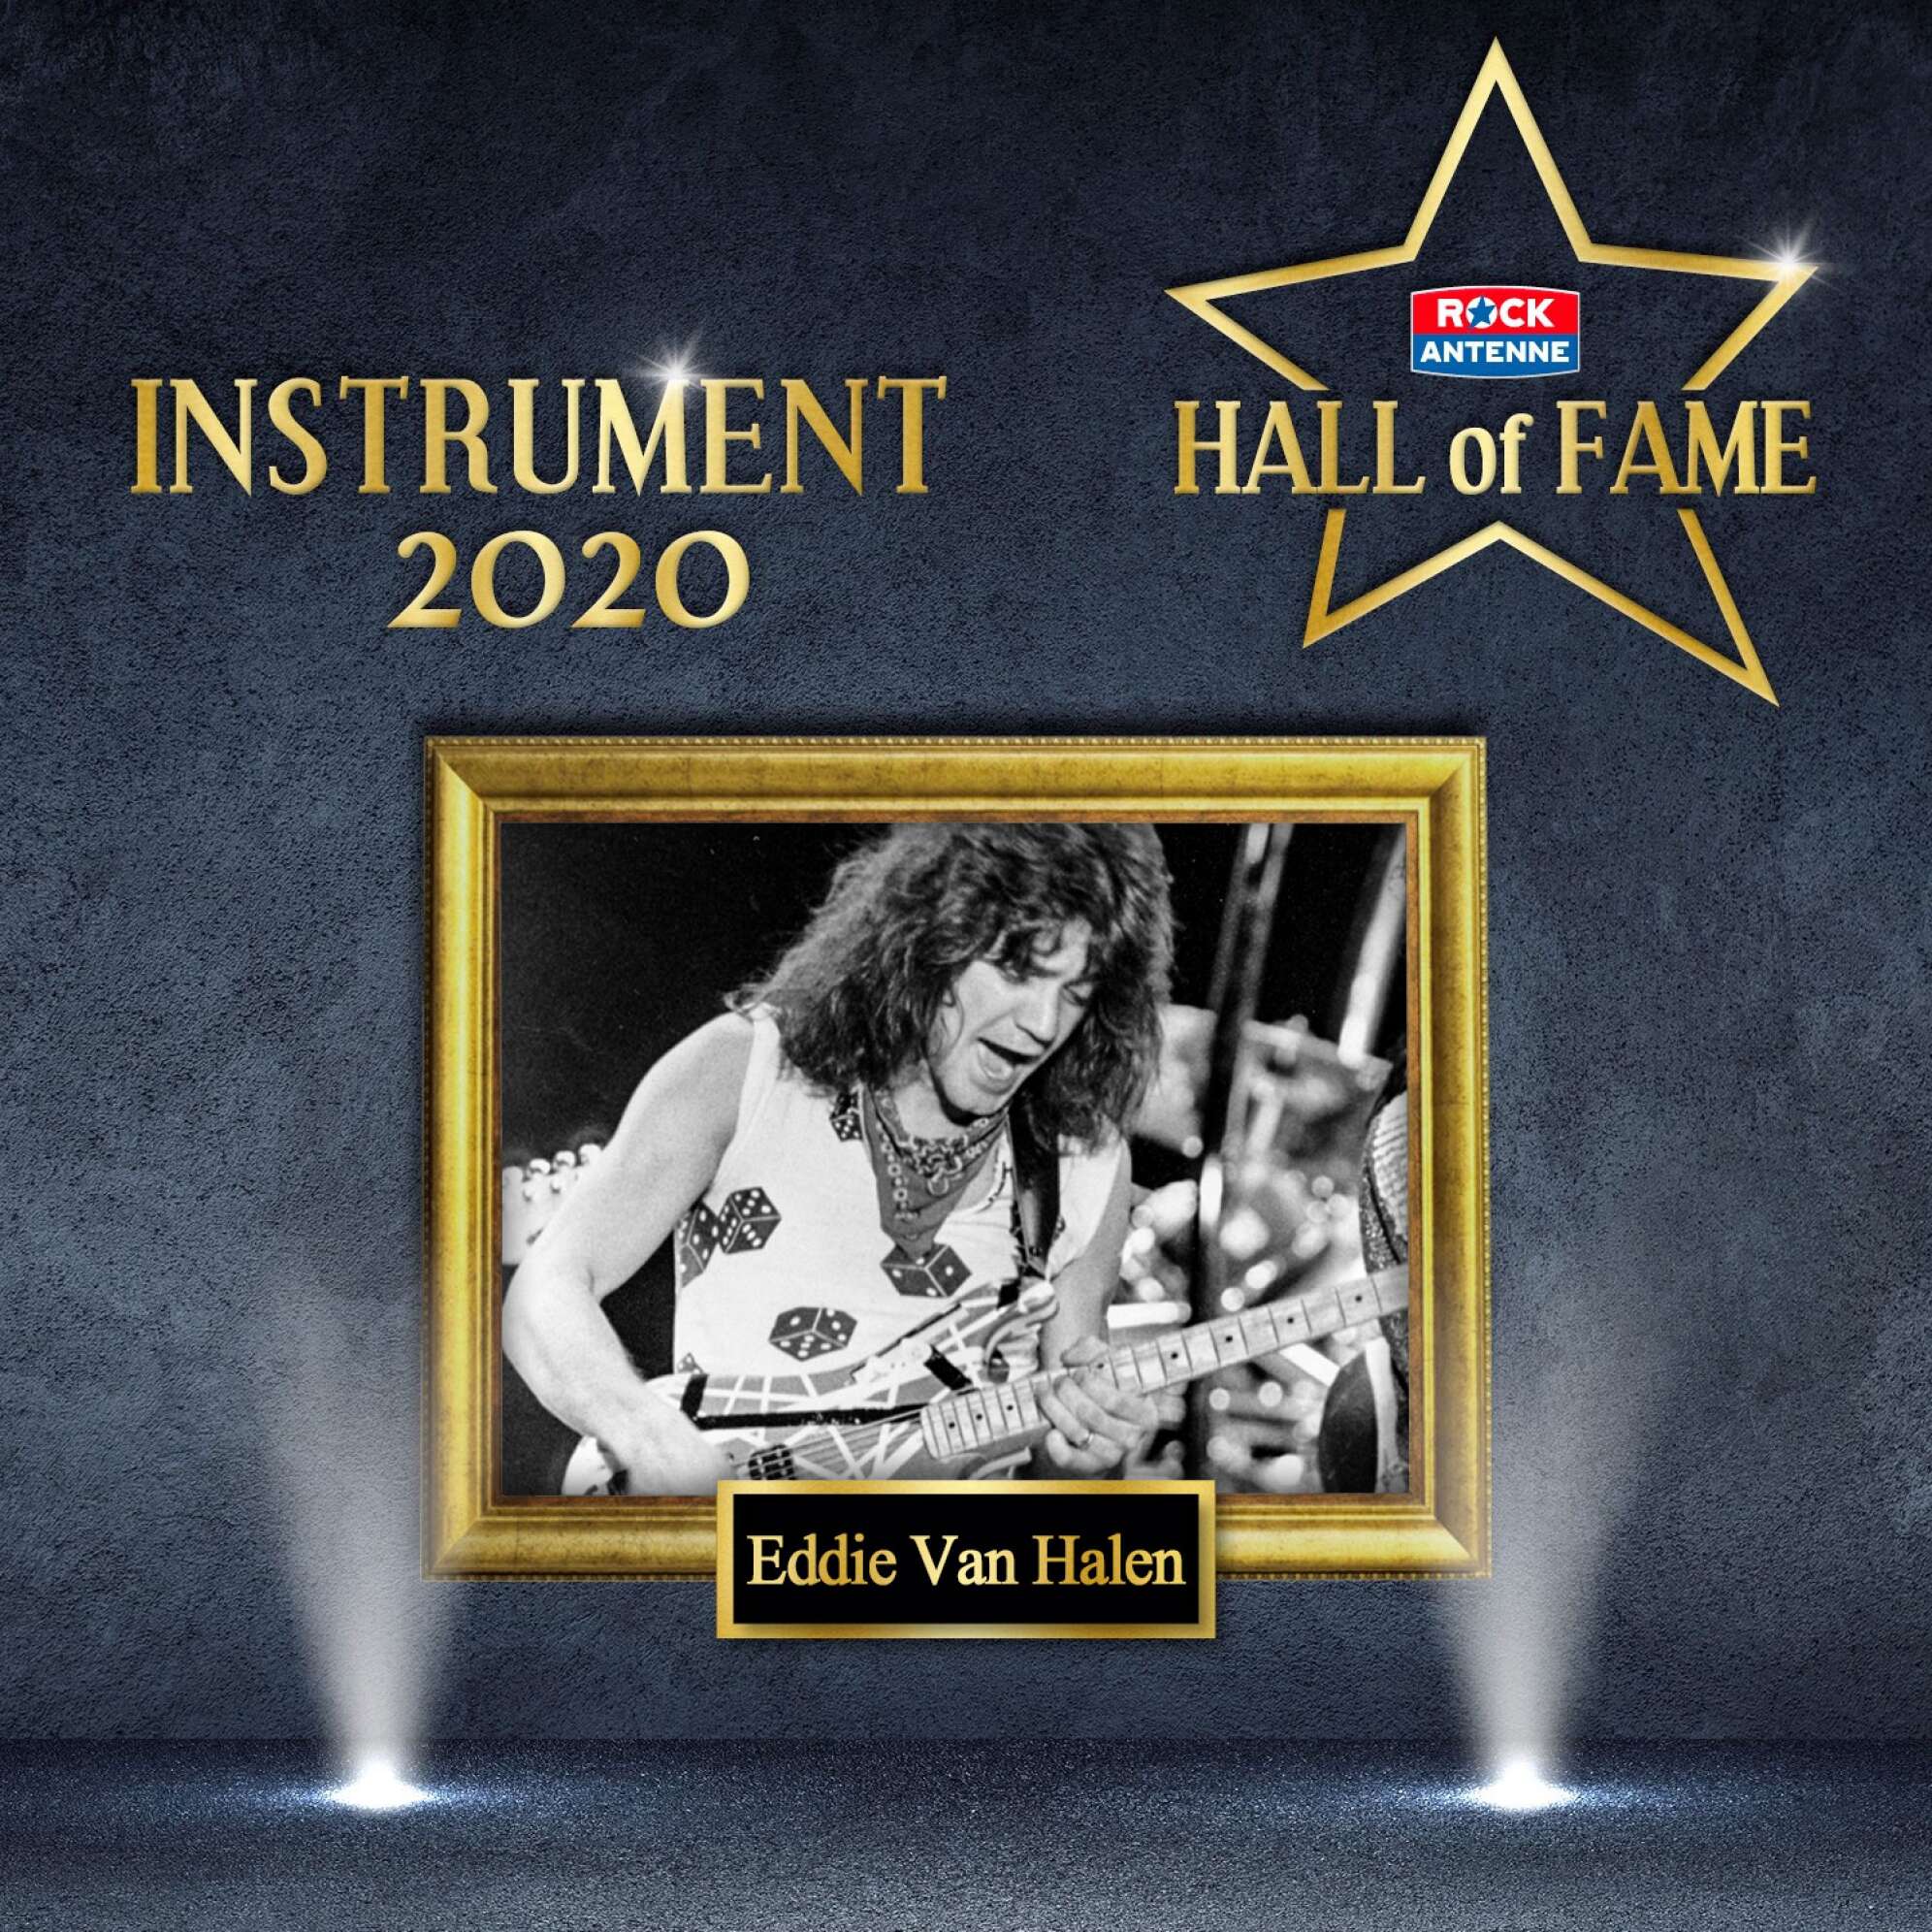 Bild der ROCK ANTENNE Hall of Fame - Gewinner Kategorie Instrument 2020: Eddie Van Halen